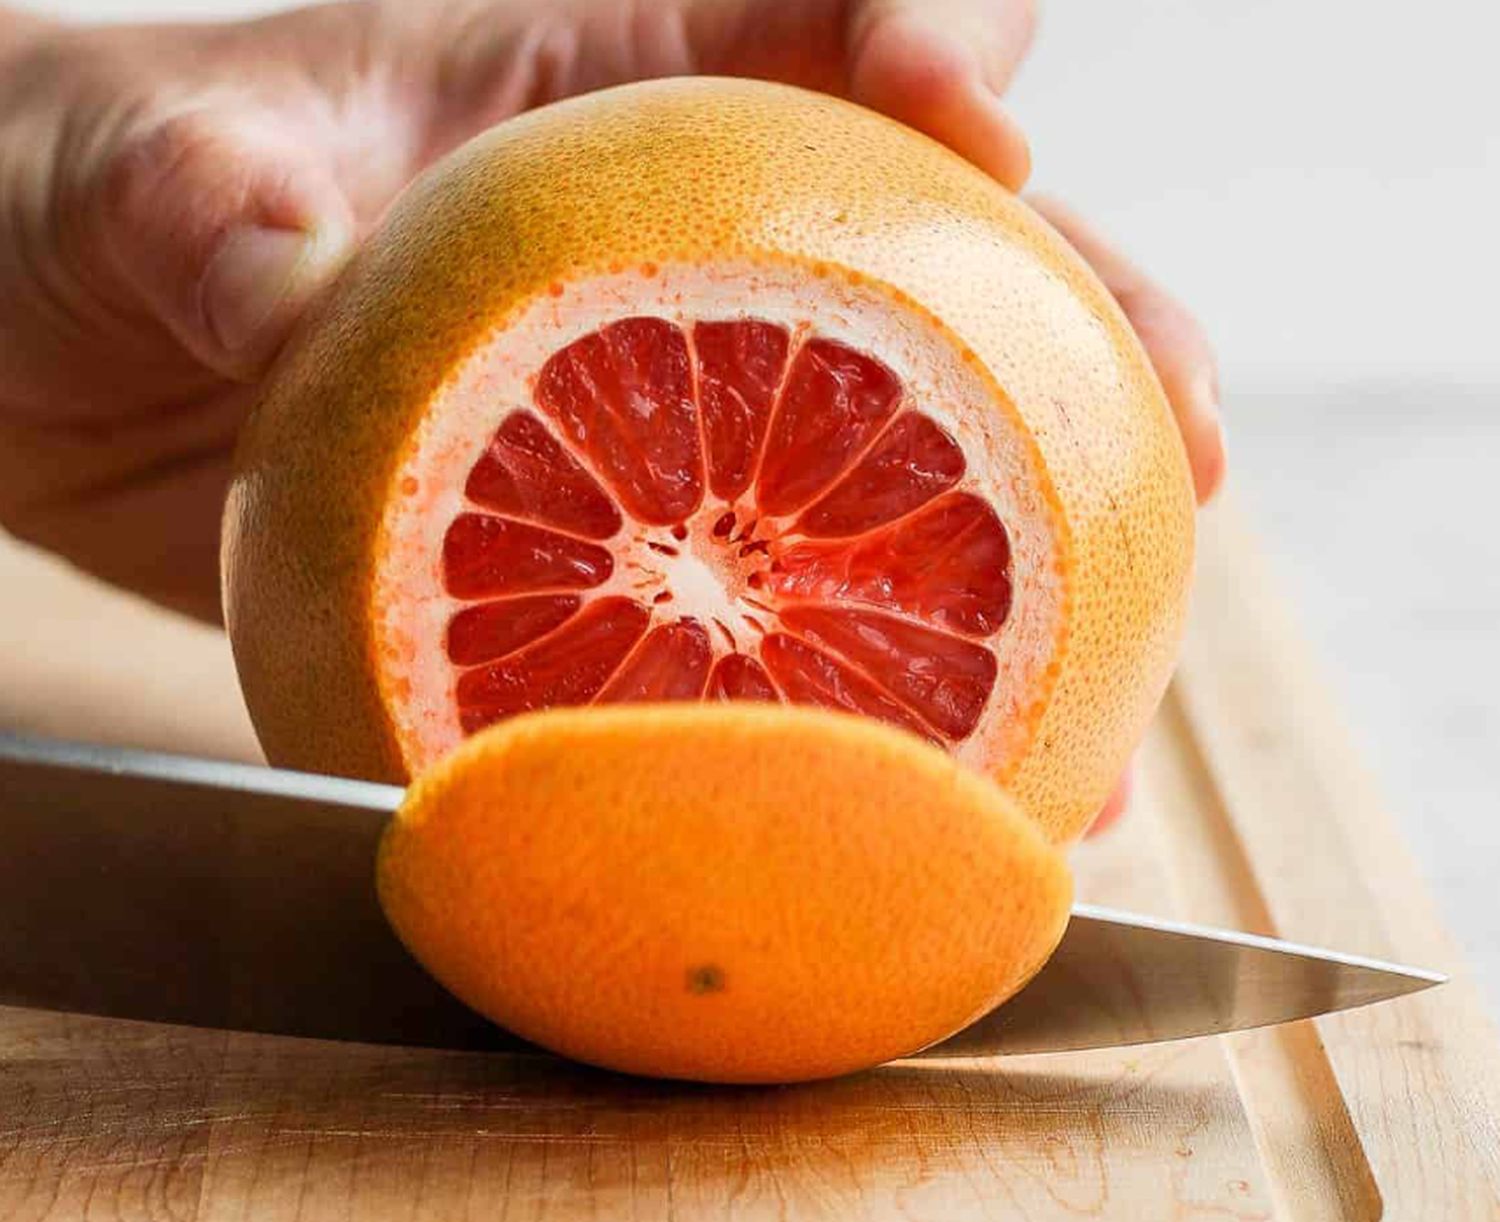 Este dovedit științic. Dacă luați medicamente, efectele unui singur grapefruit pot fi devastatoare pentru organism